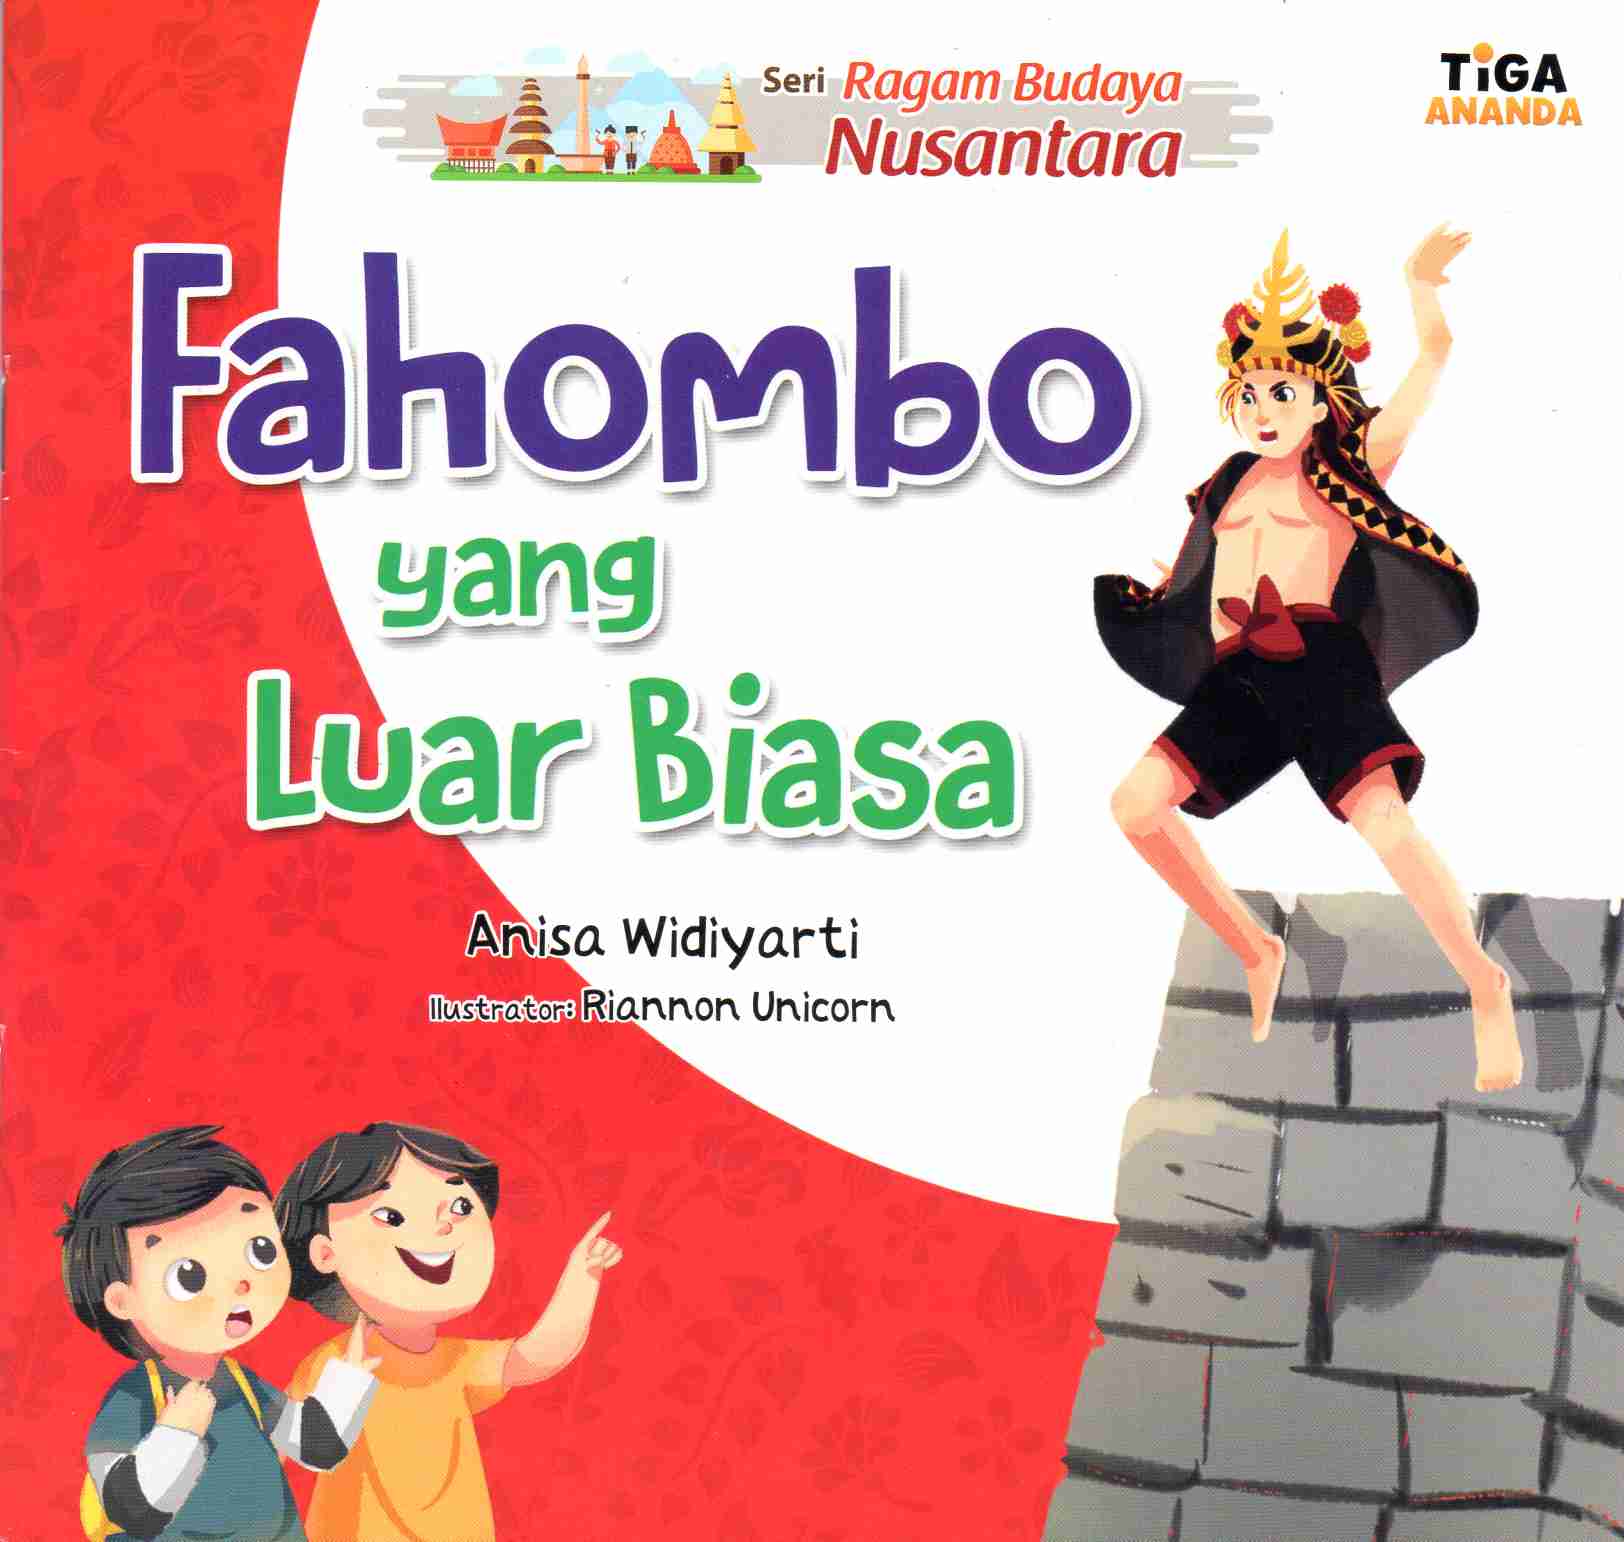 Seri Ragam Budaya Nusantara: Fahombo yang Luar Biasa